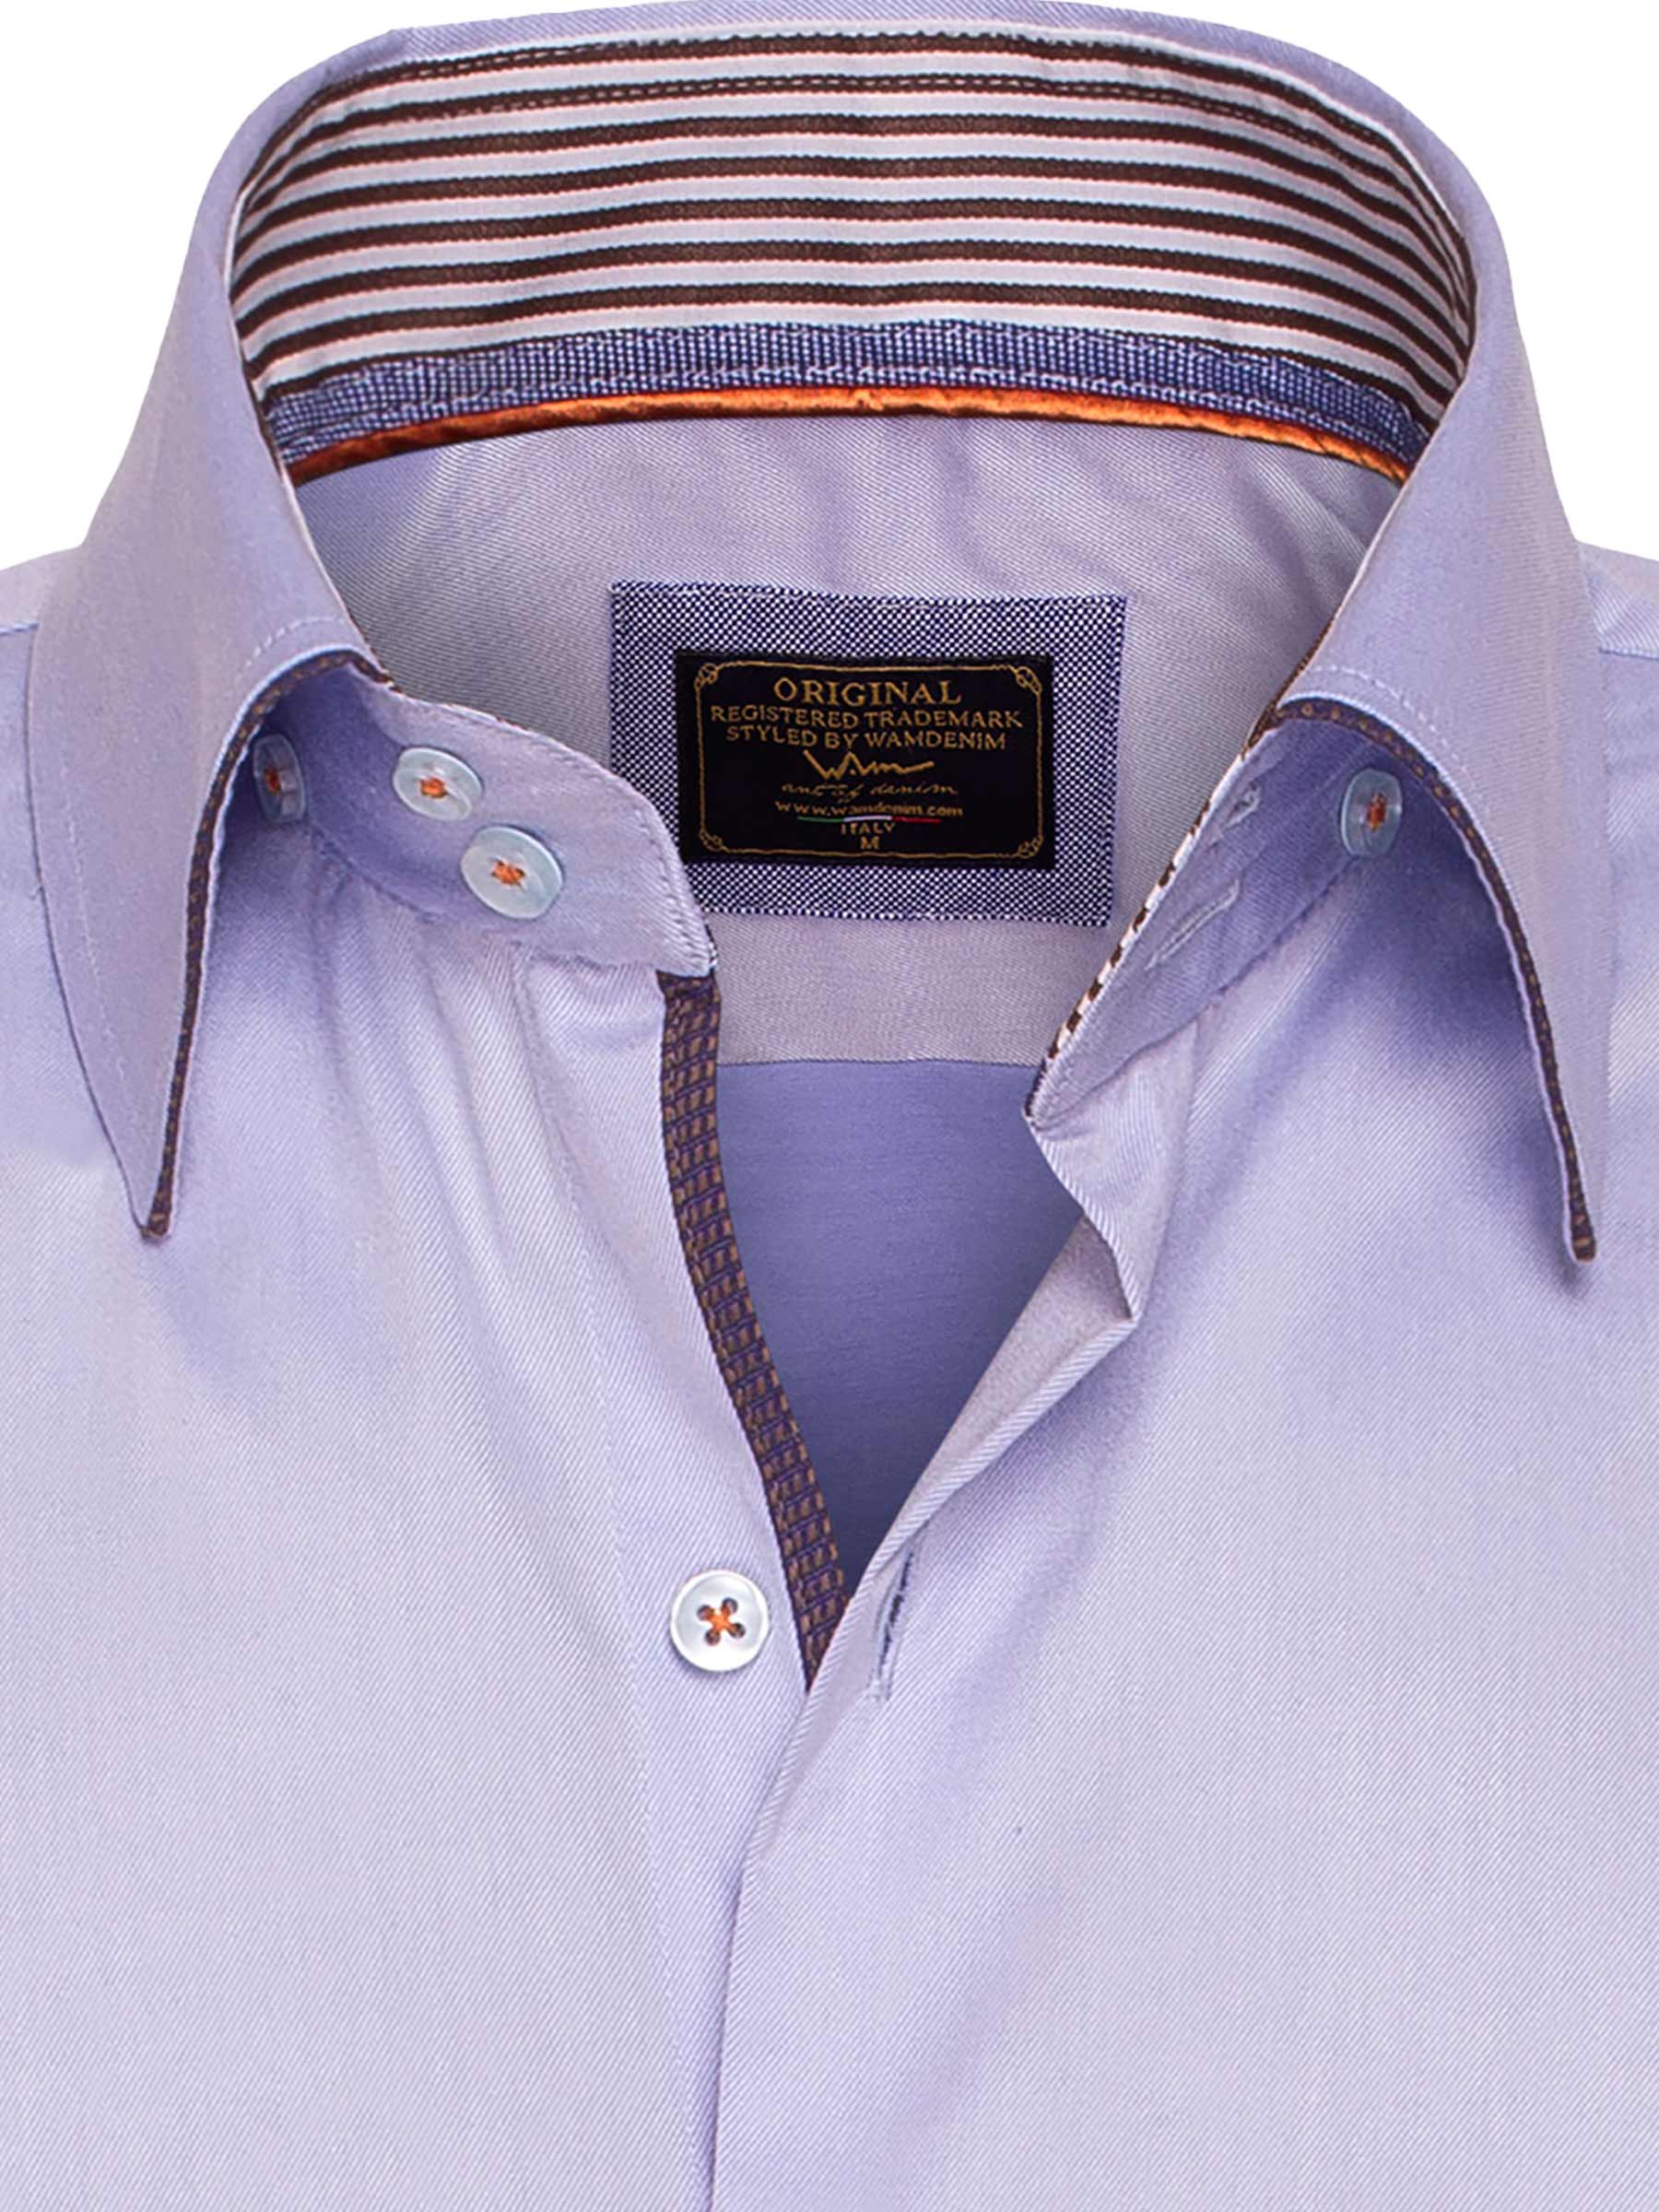 Shirt Long Sleeve 75443 Light Blue